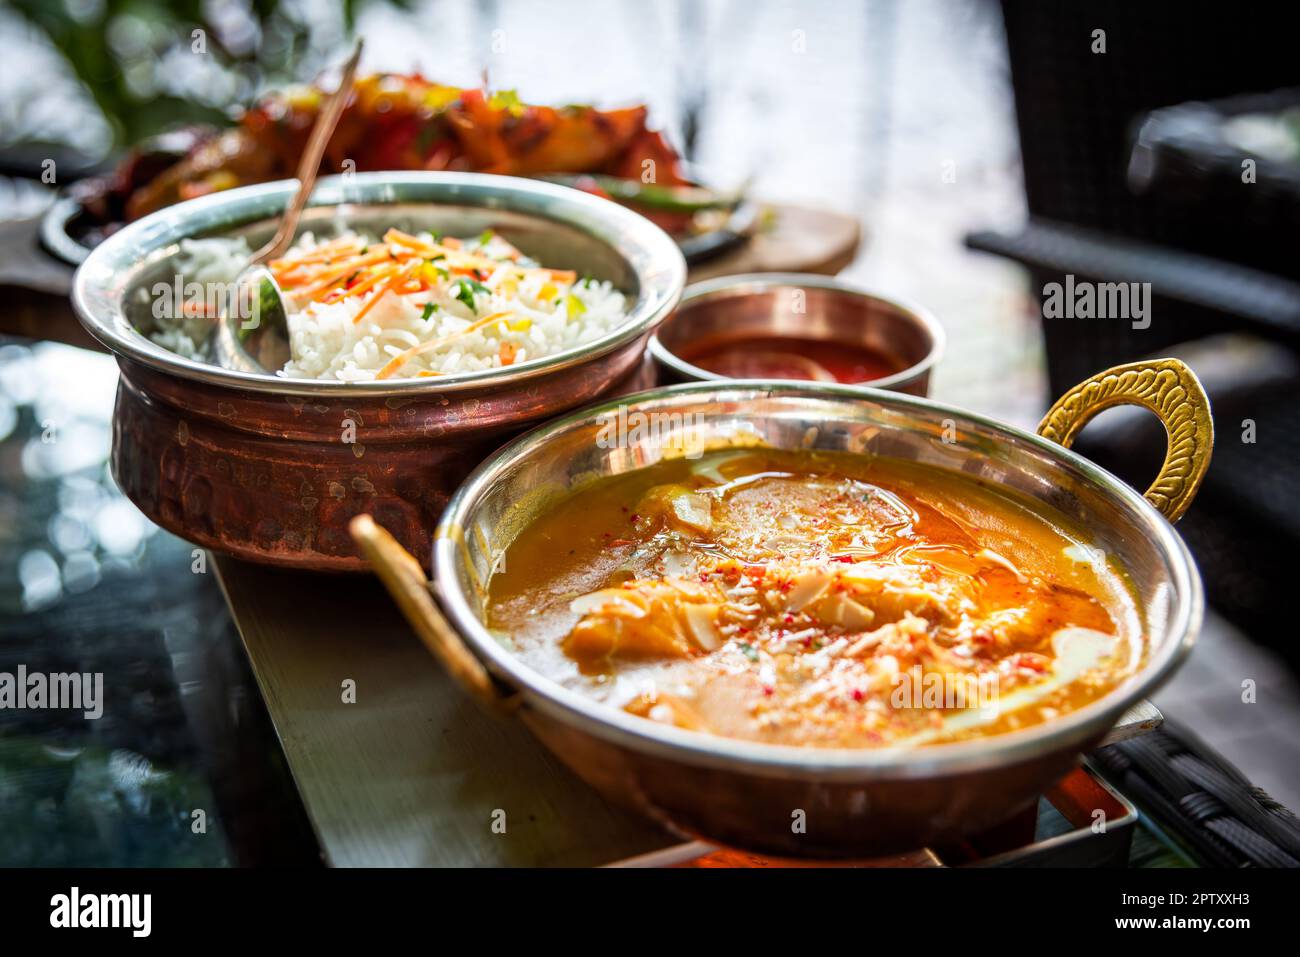 Cuisine indienne. Une cuisine épicée, aromatique et savoureuse avec cari ou sauce tandoori, qui rave vos papilles gustatives. Banque D'Images